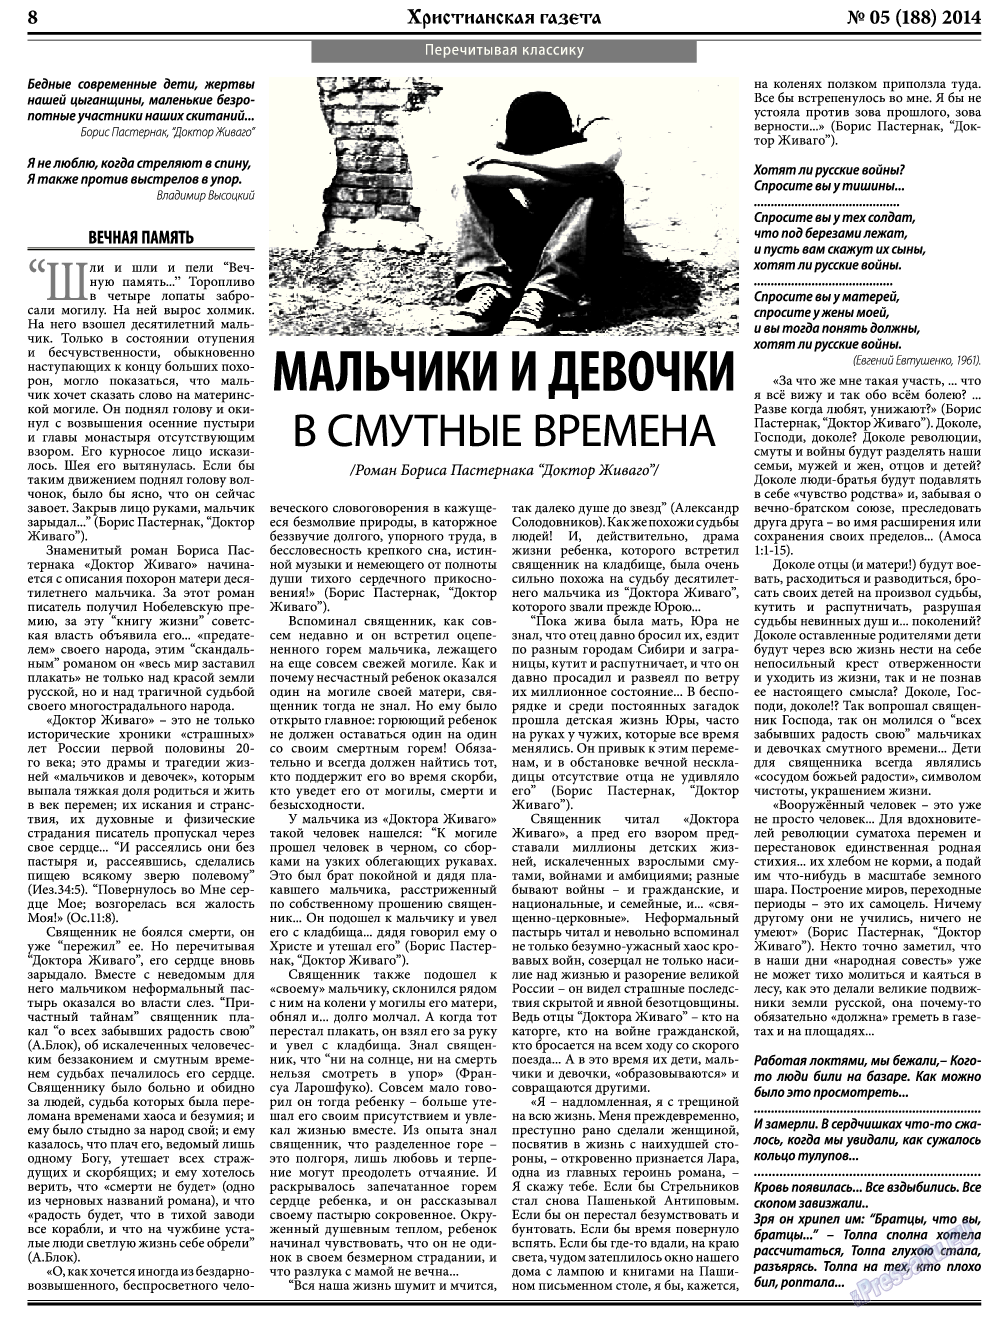 Христианская газета, газета. 2014 №5 стр.8